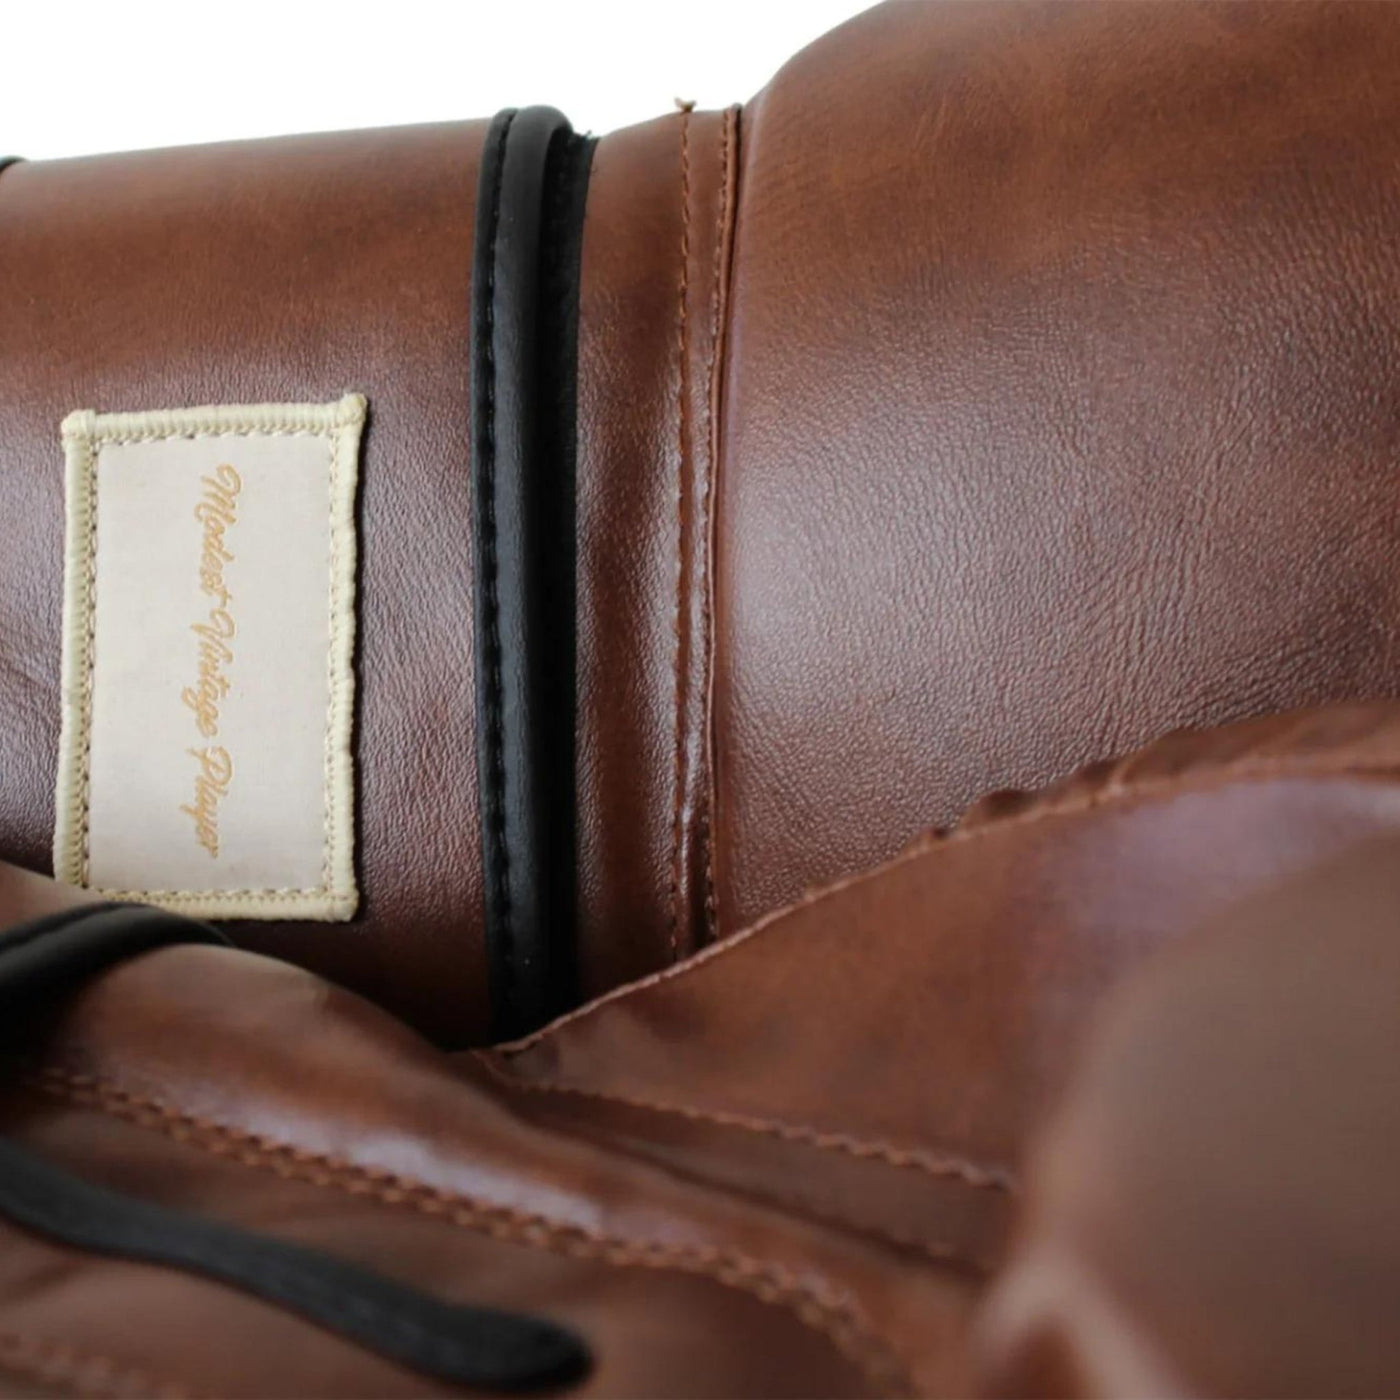 Vegan PRO Heritage Brown Leather Boxing Gloves (Strap Up) - MODEST VINTAGE PLAYER LTD